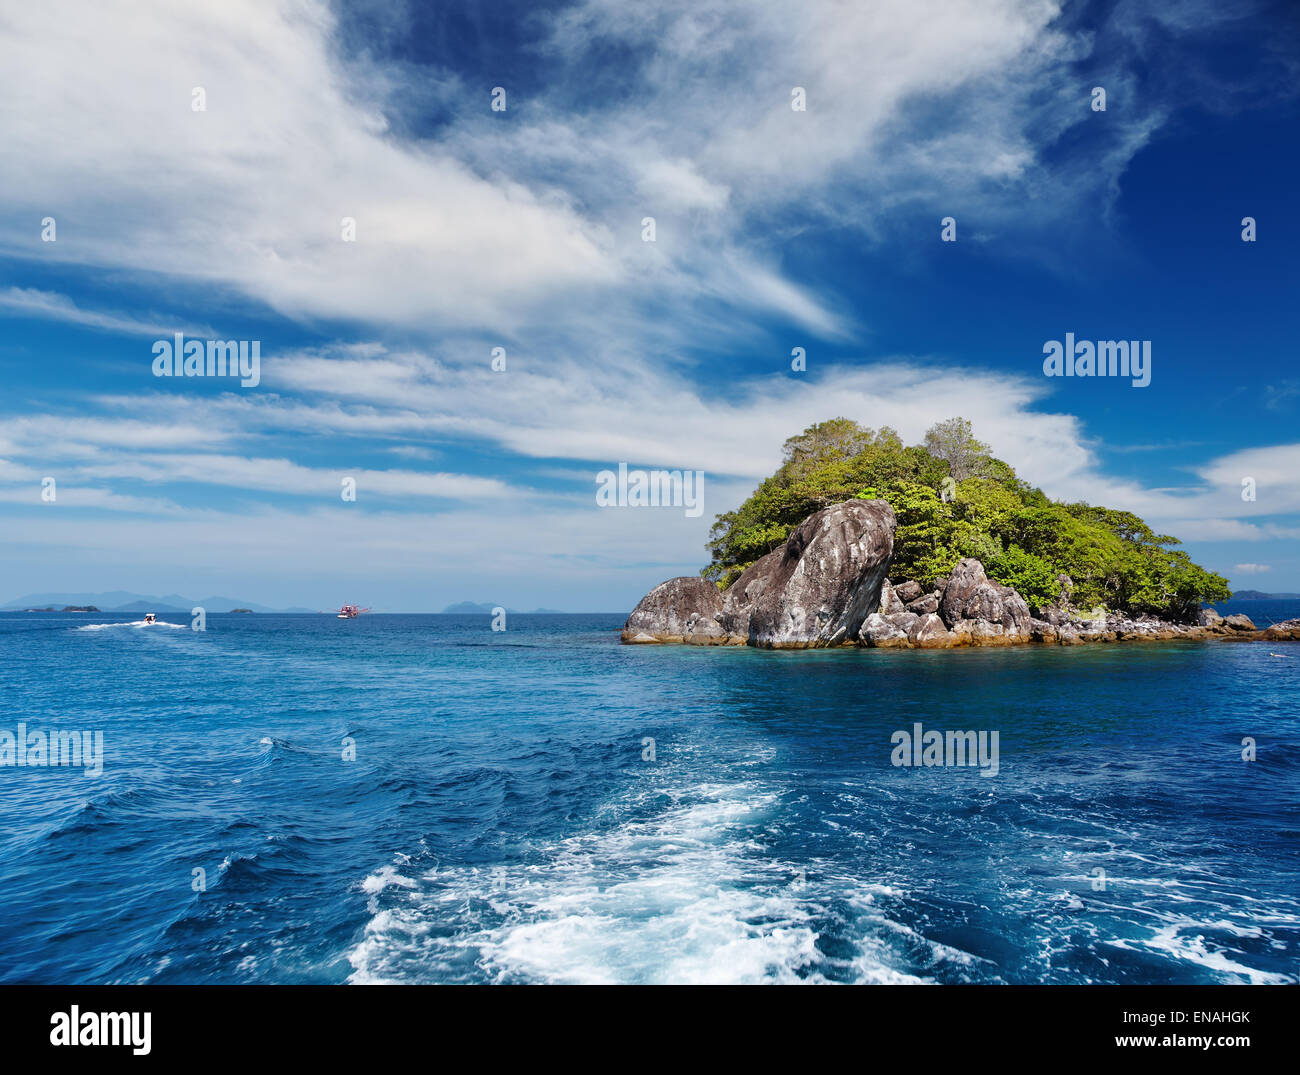 El archipiélago de islas tropicales, Trat, Tailandia Foto de stock